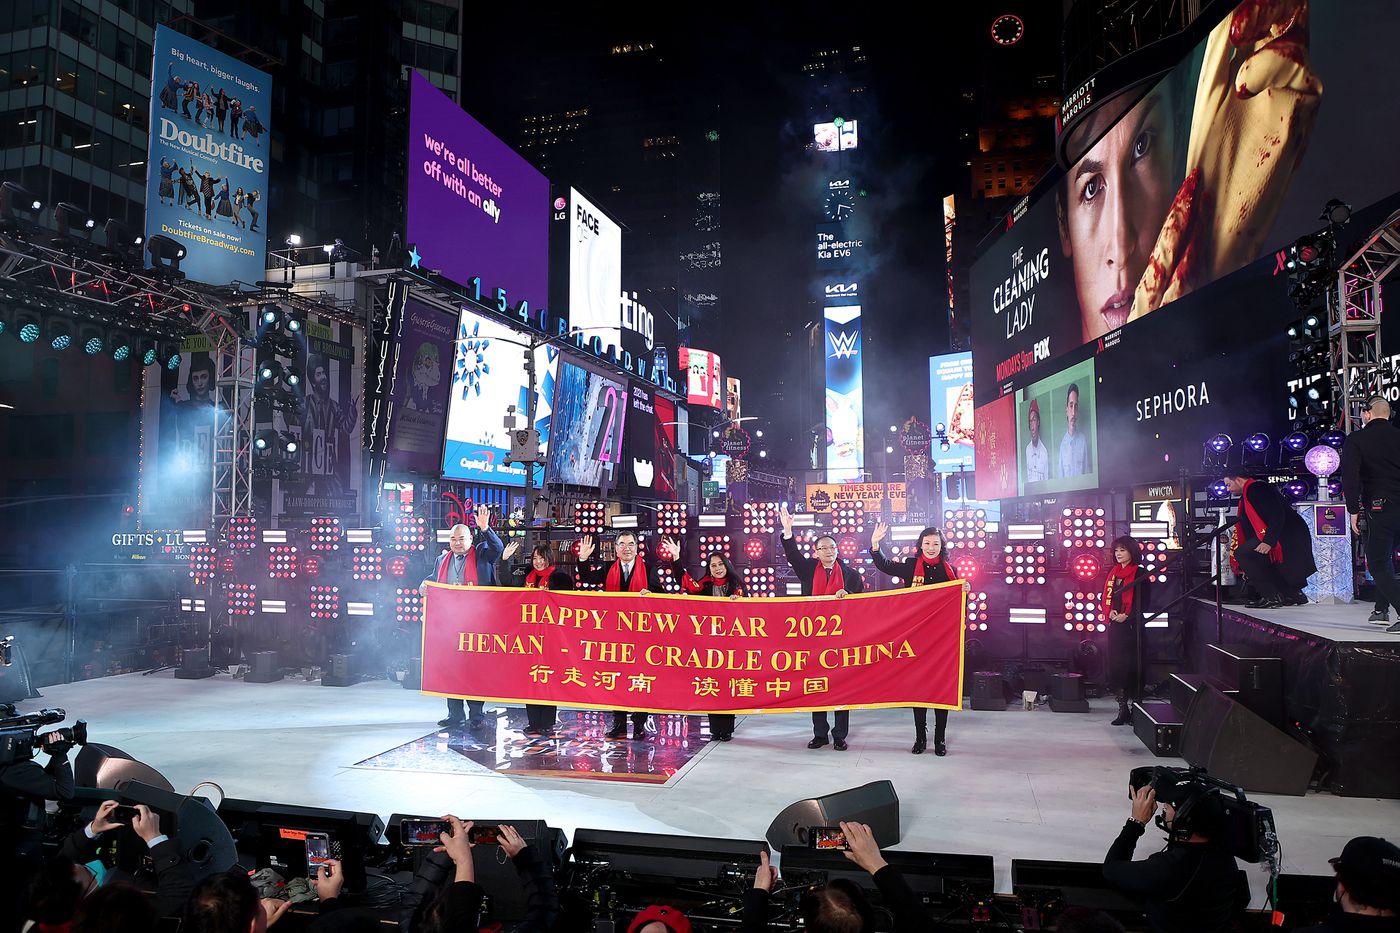  Hiệp hội hữu nghị Mỹ-Trung đóng góp tiết mục biểu diễn nghệ thuật trên Quảng trường Thời đại, với đoàn nghệ sĩ đến từ tỉnh Hải Nam, Trung Quốc. Ảnh: Getty Images